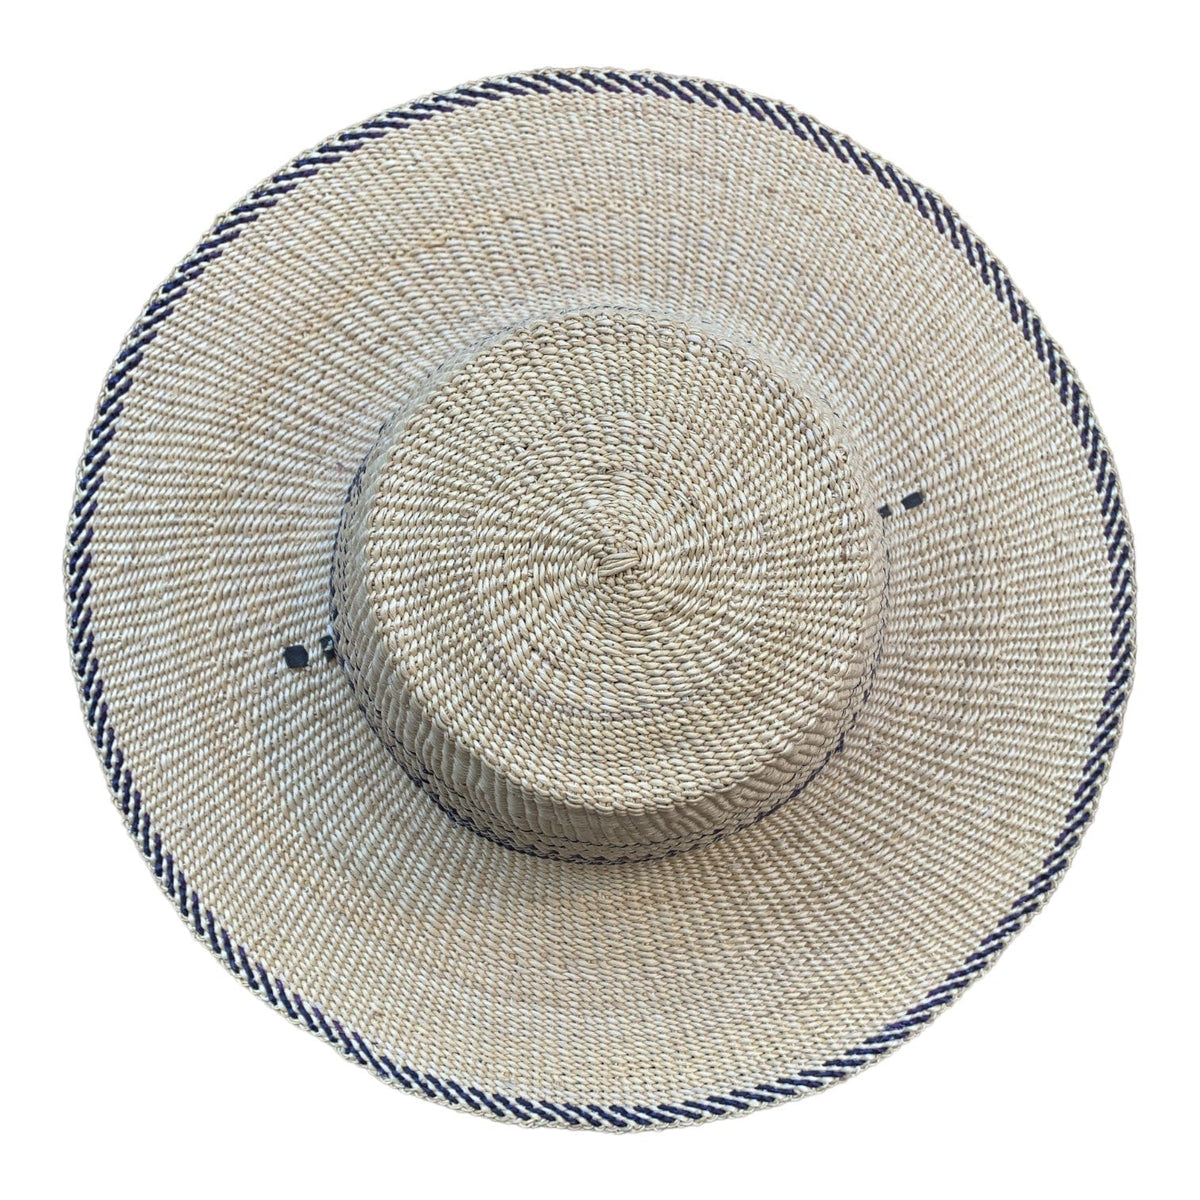 Gobi Straw Hat